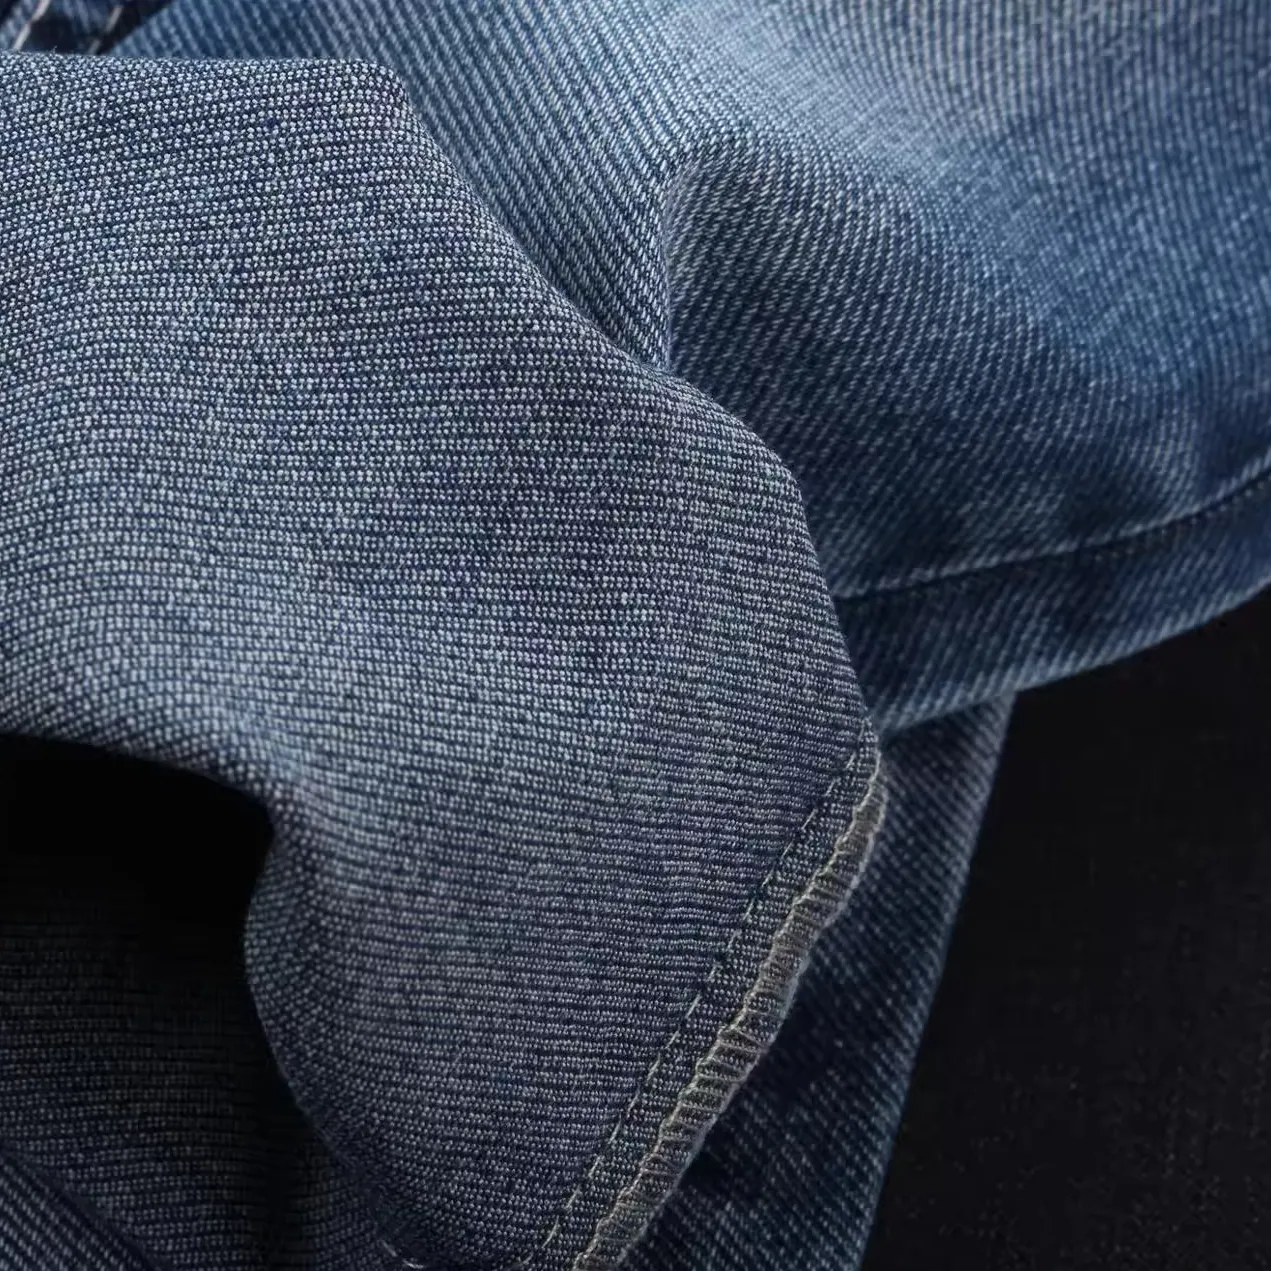 Nouveaux tissus en denim stretch en coton doux à tissage spécial jeans matériaux pour les designs de marque